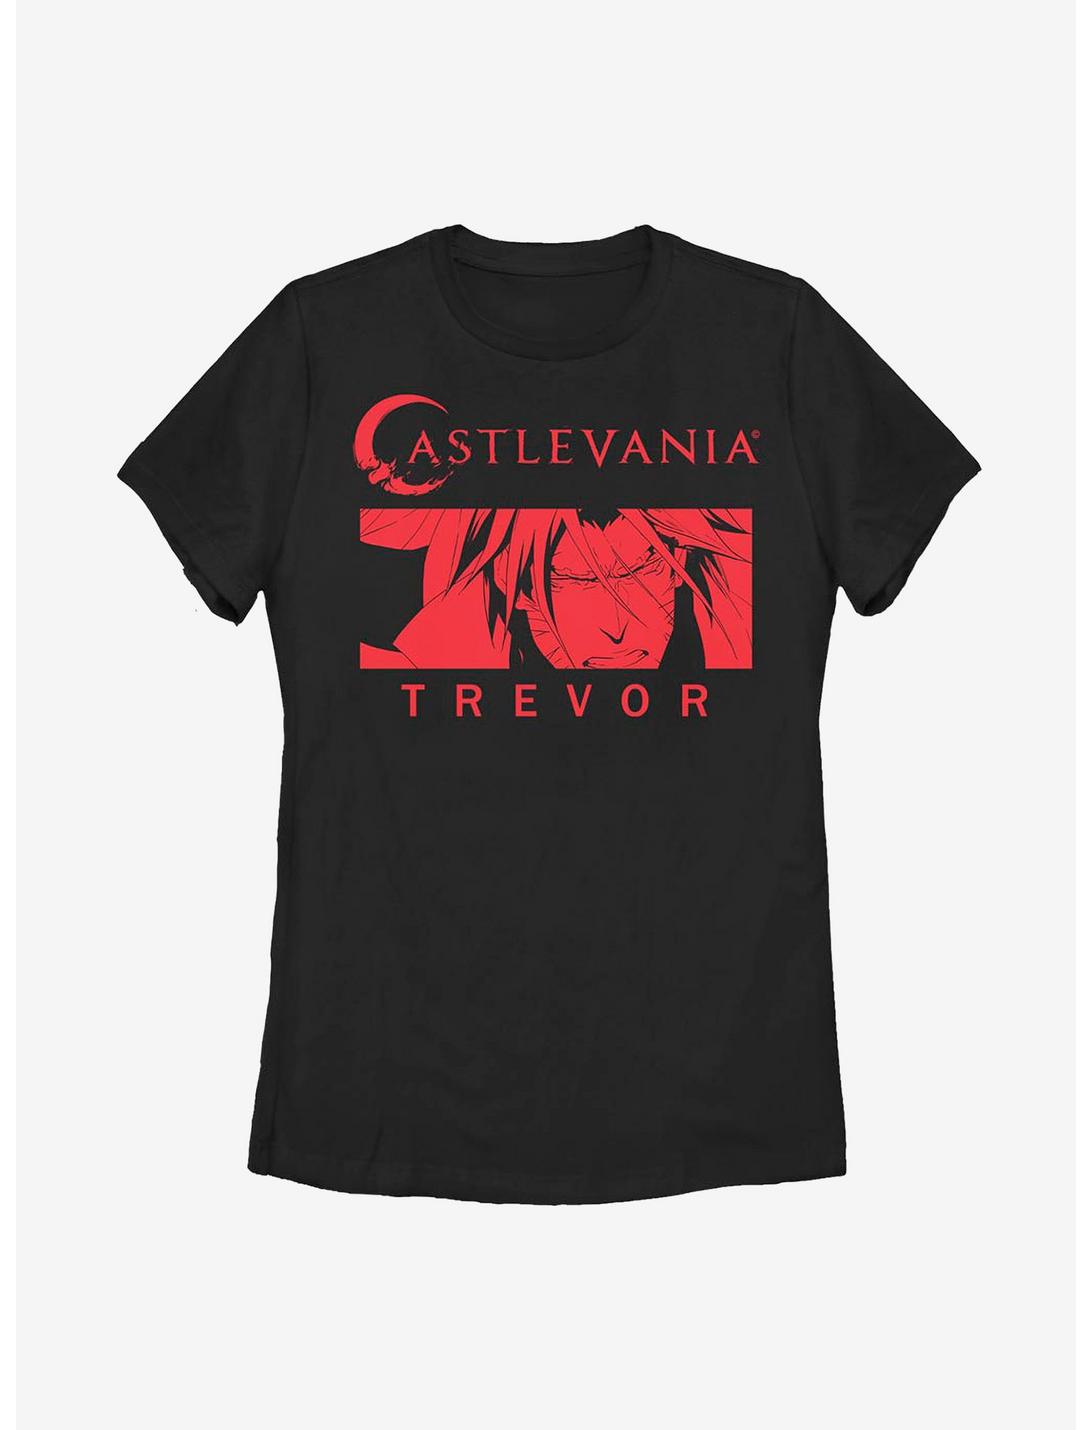 Castlevania Trevor Red Womens T-Shirt, BLACK, hi-res